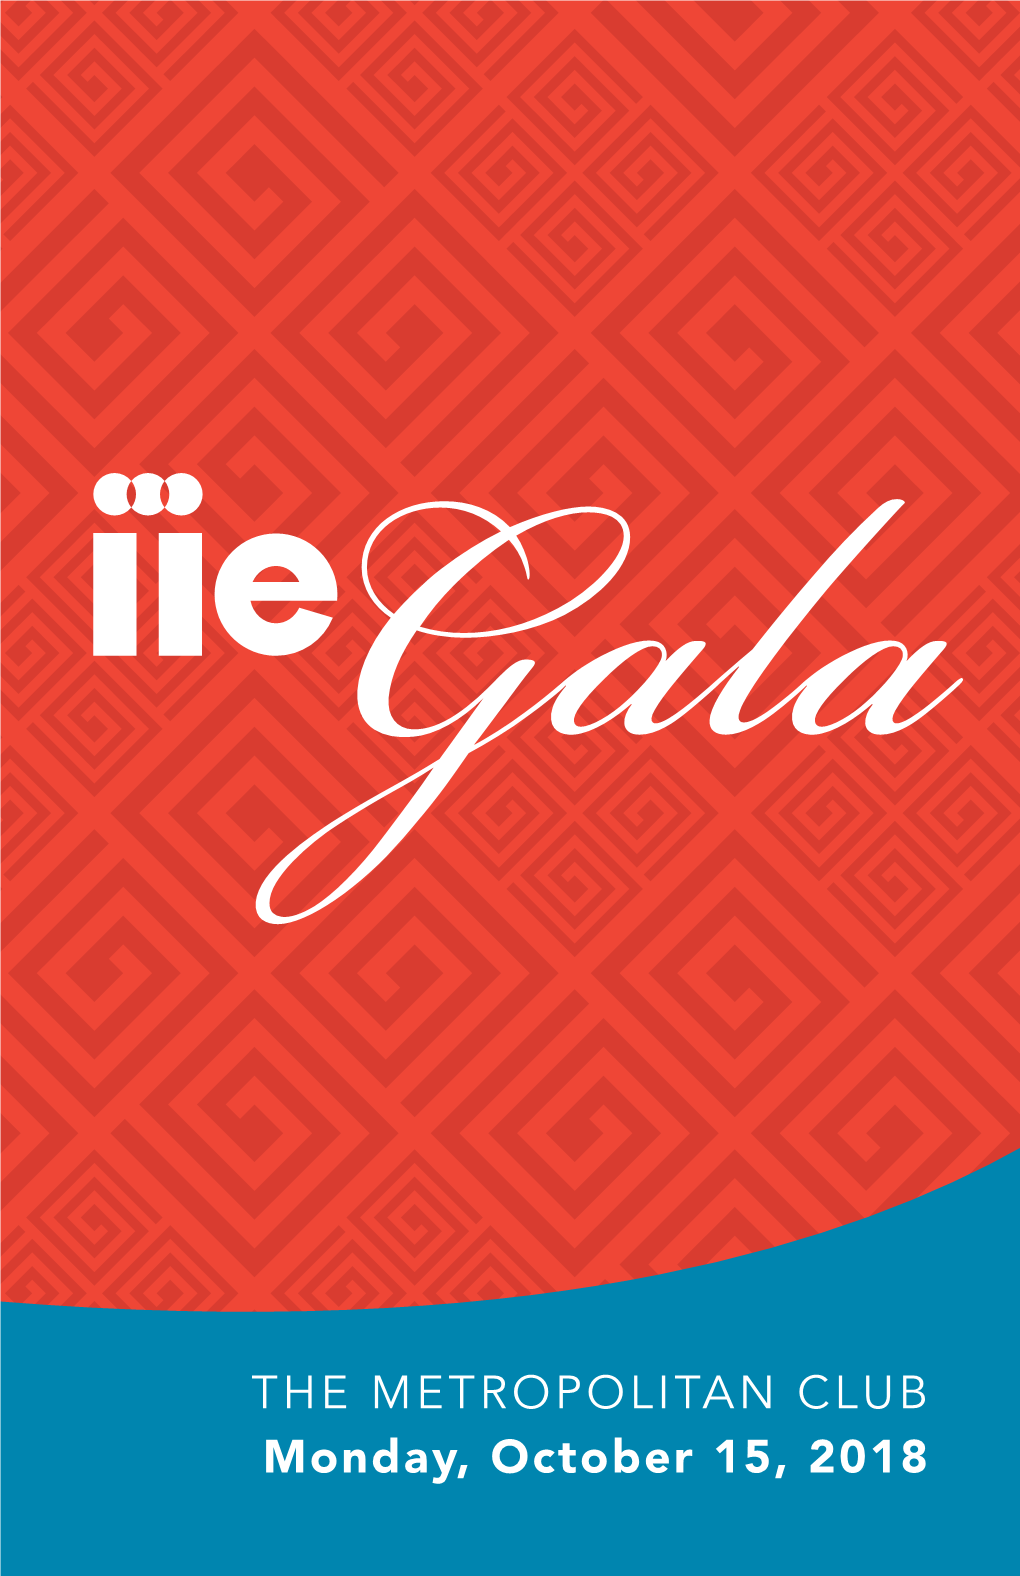 2018 IIE Gala Program